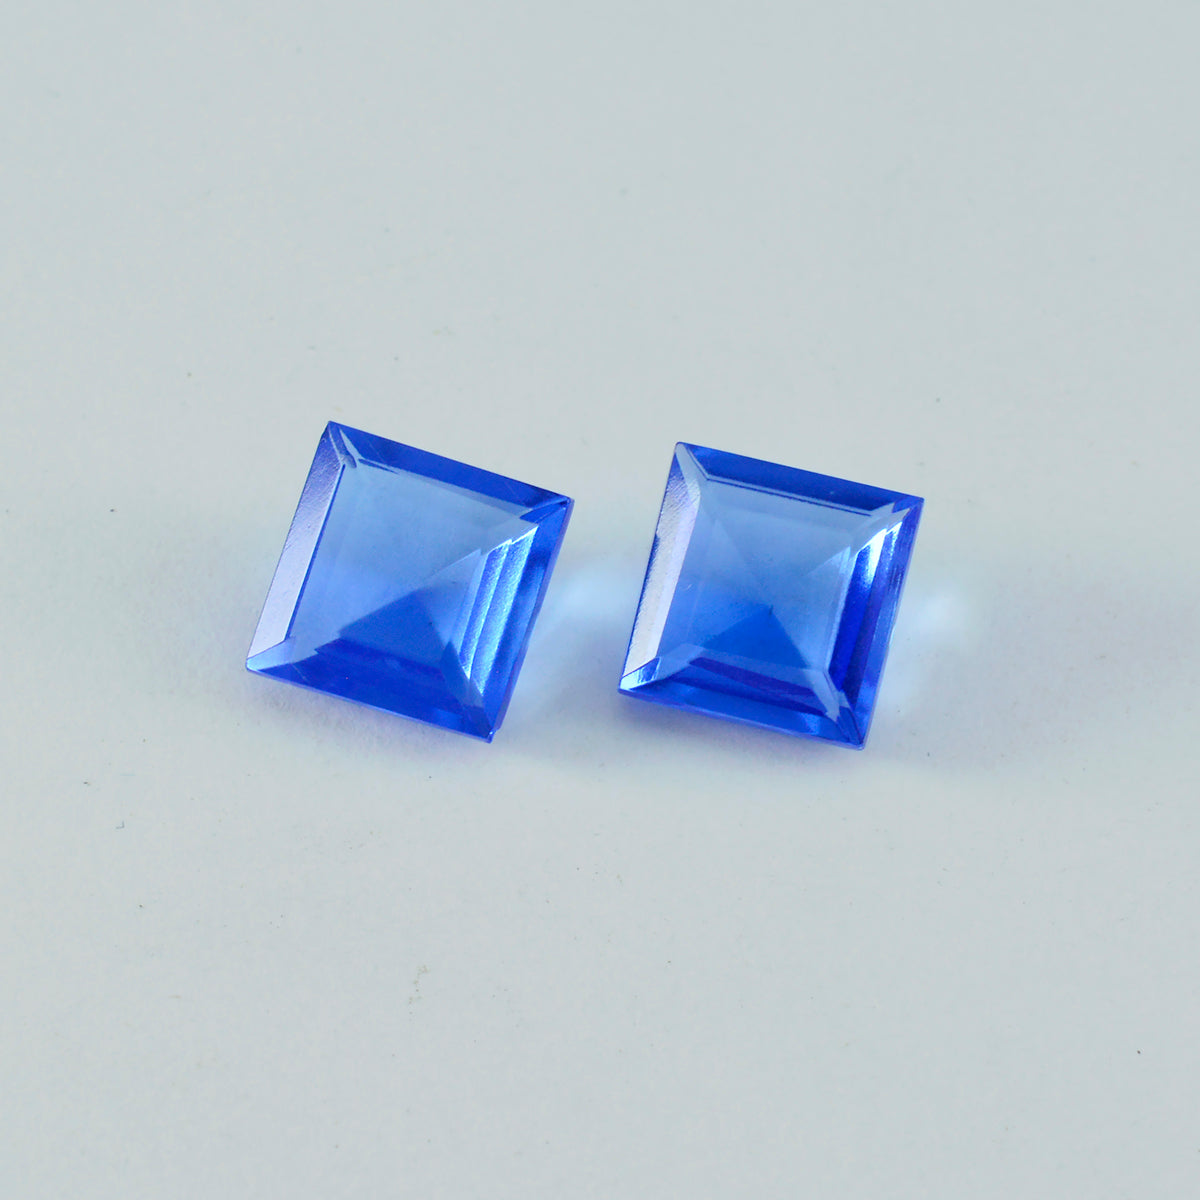 Riyogems 1PC Blauwe Saffier CZ Facet 13x13 mm Vierkante Vorm uitstekende Kwaliteit Losse Edelsteen